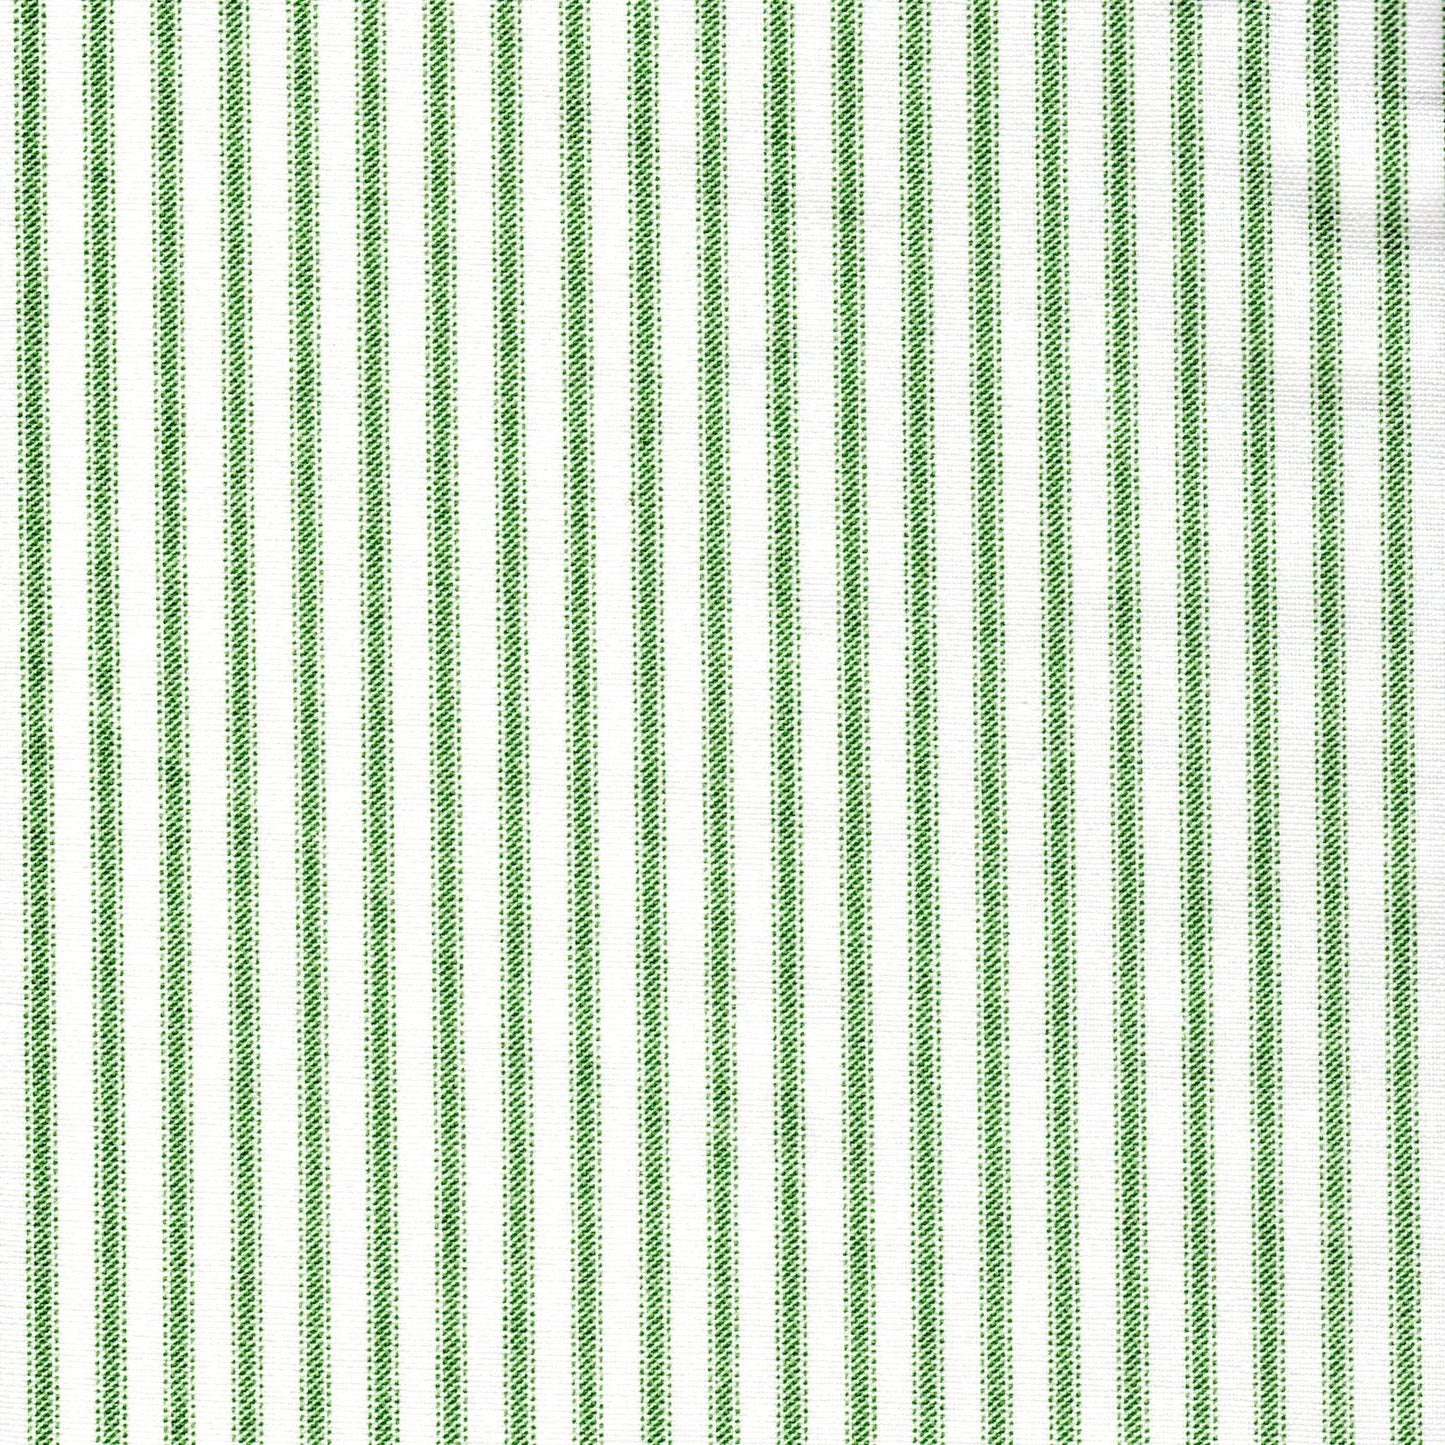 duvet cover in Classic Pine Green Ticking Stripe on White